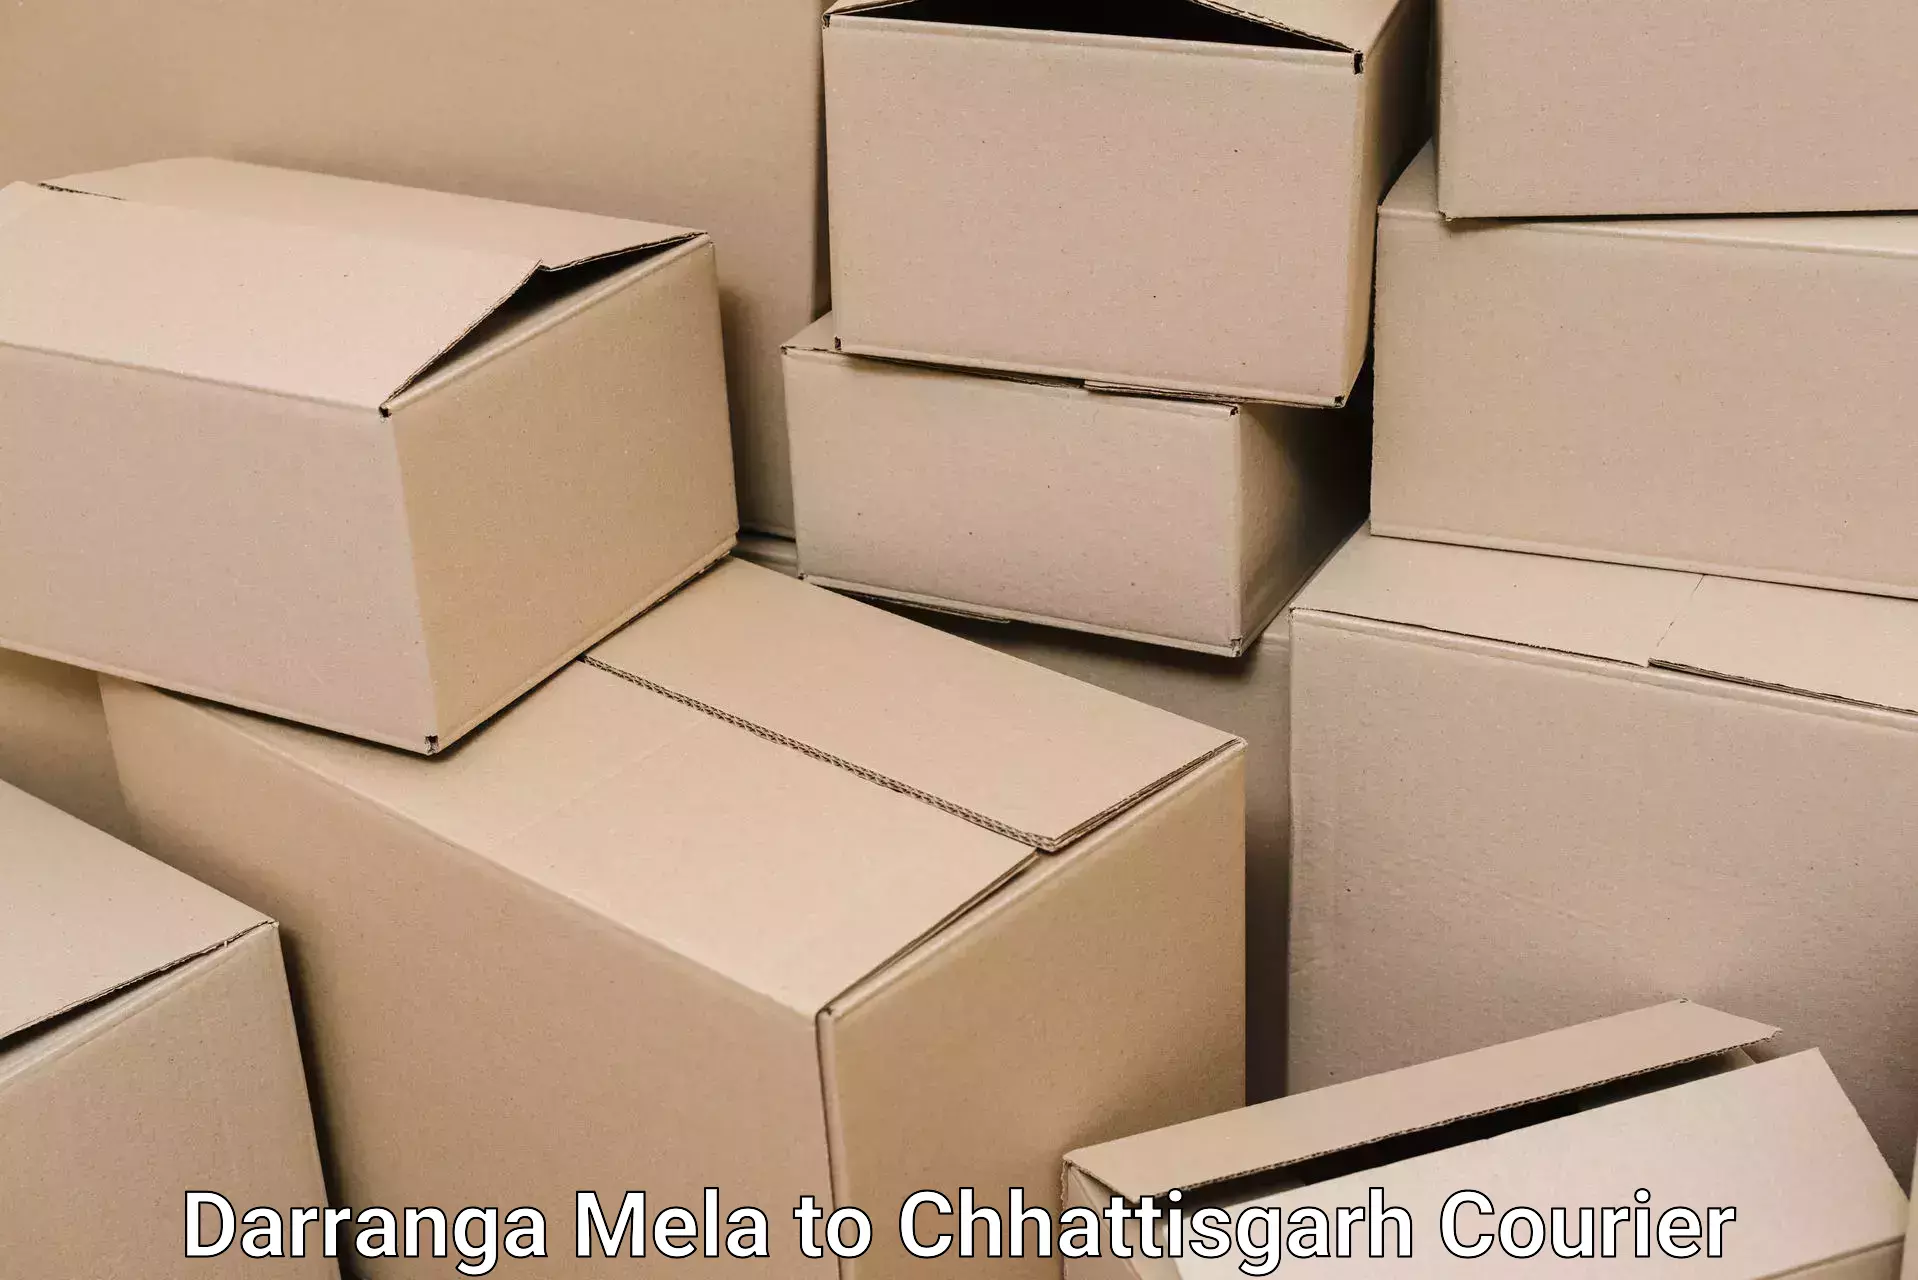 Furniture transport experts in Darranga Mela to Mandhar